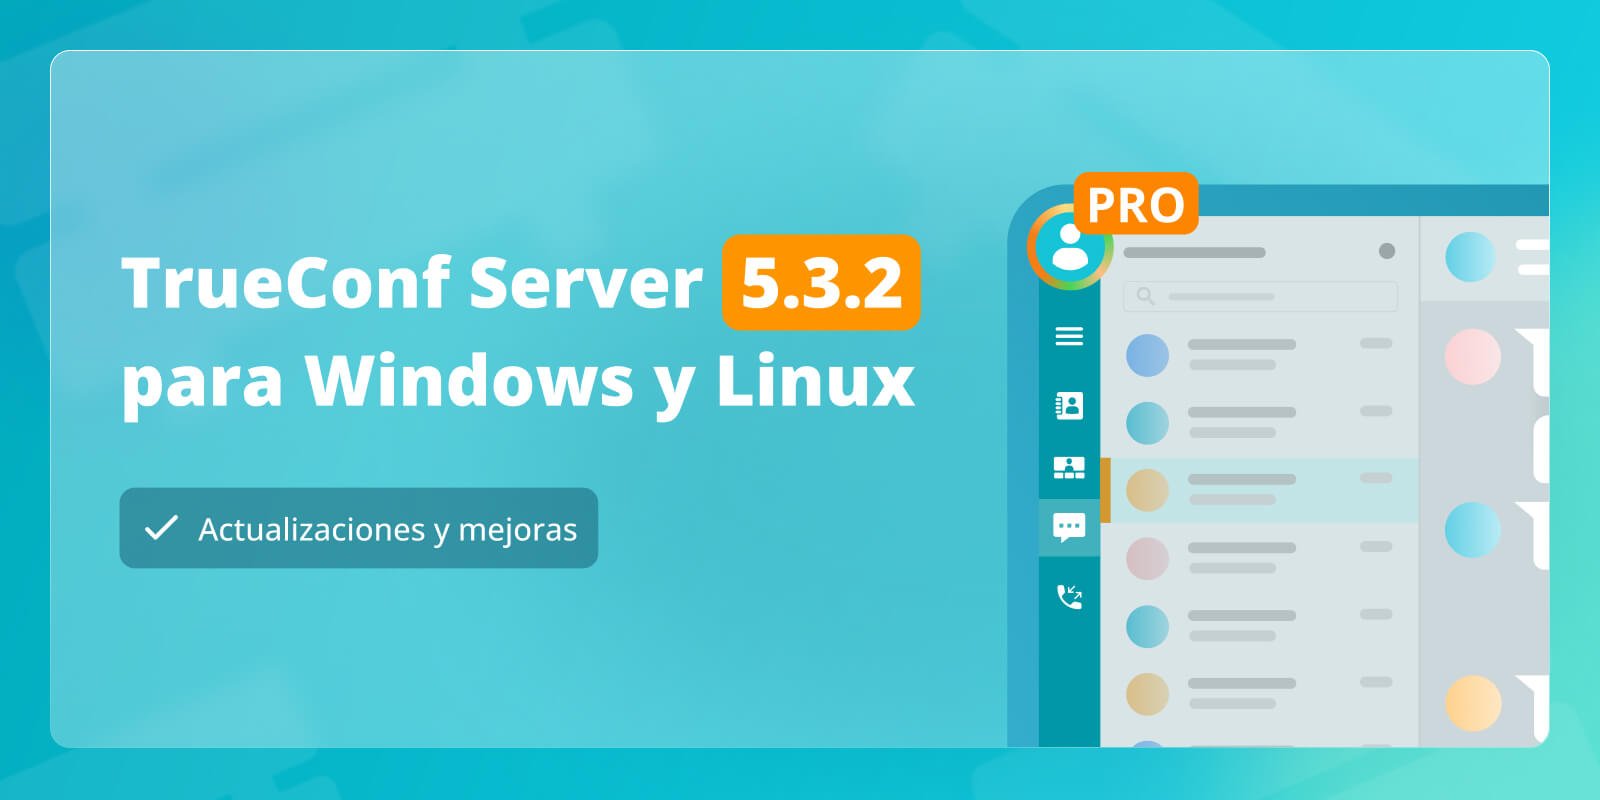 TrueConf Server 5.3.2: Actualizaciones y mejoras 9